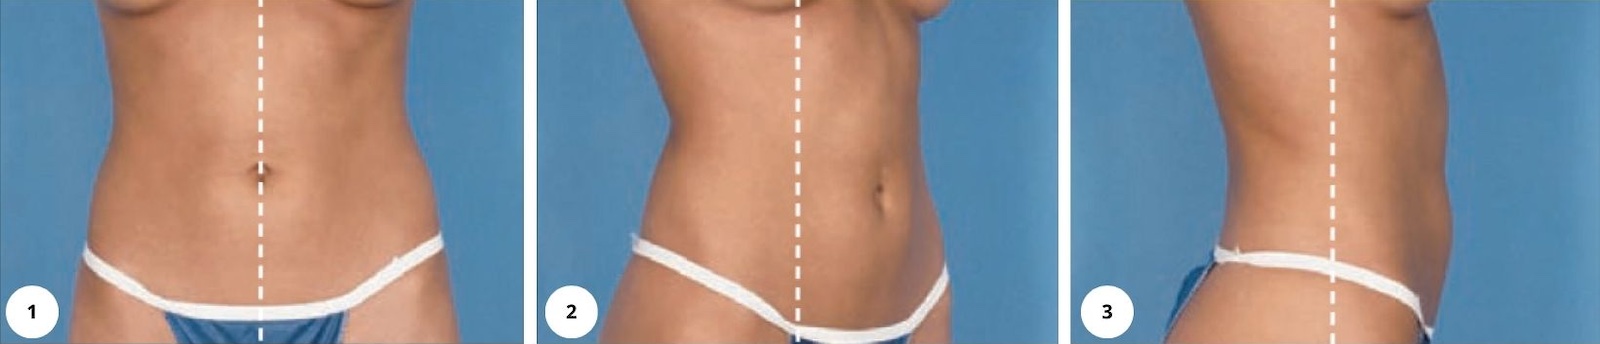 Instrukce pro vytvoření fotografií pro online konzultaci - břicho a body contouring